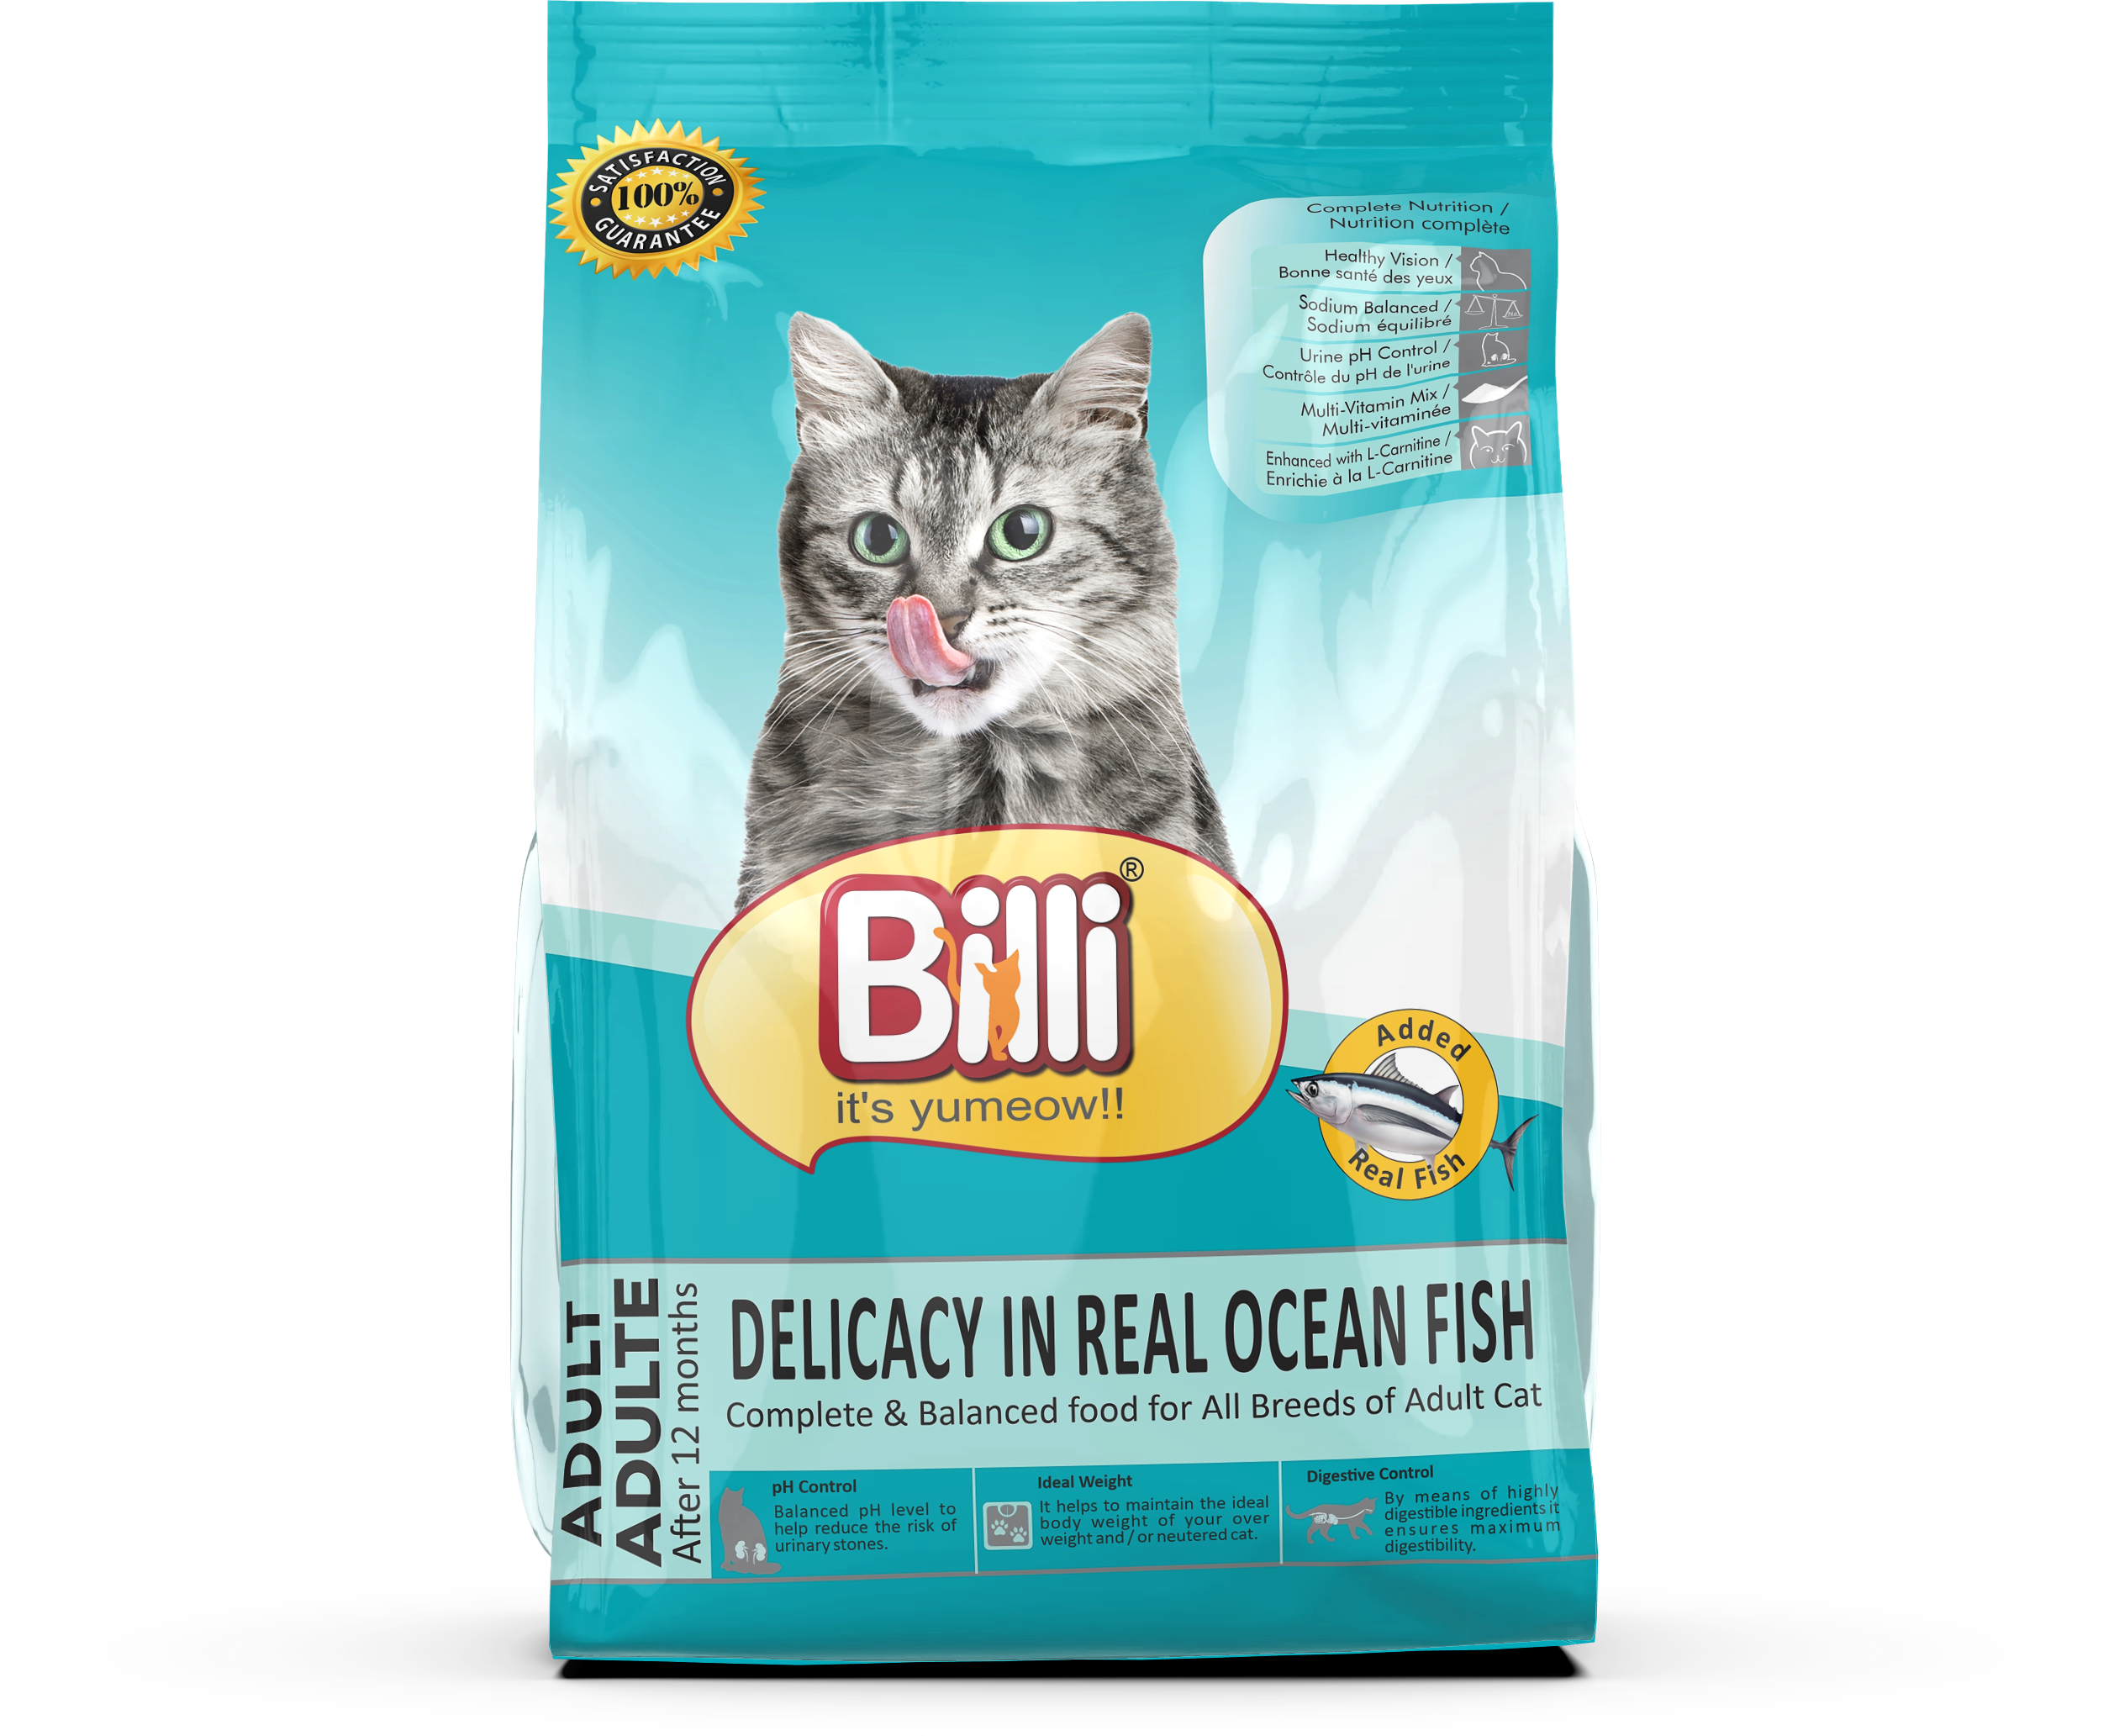 Real Ocean Fish Cat Food